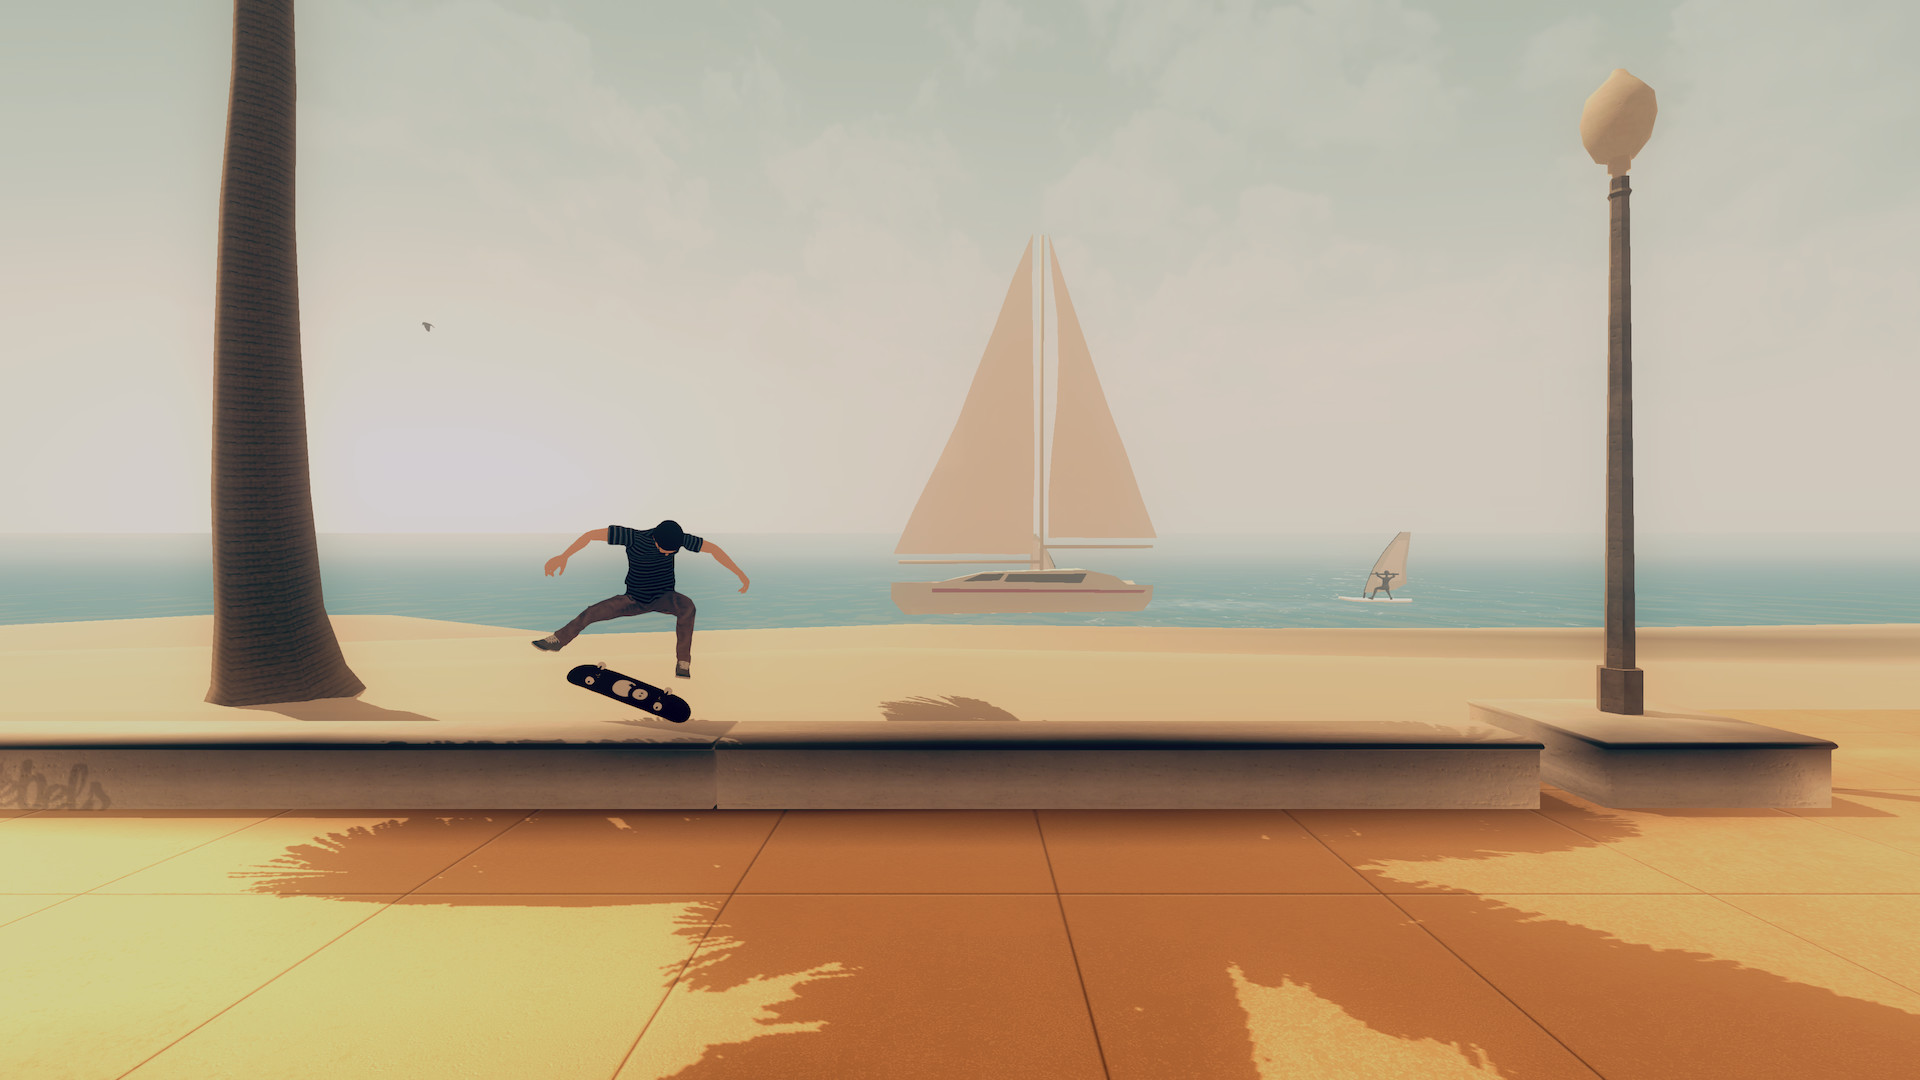 Skate City: jogo indie de skate é lançado para consoles e PC